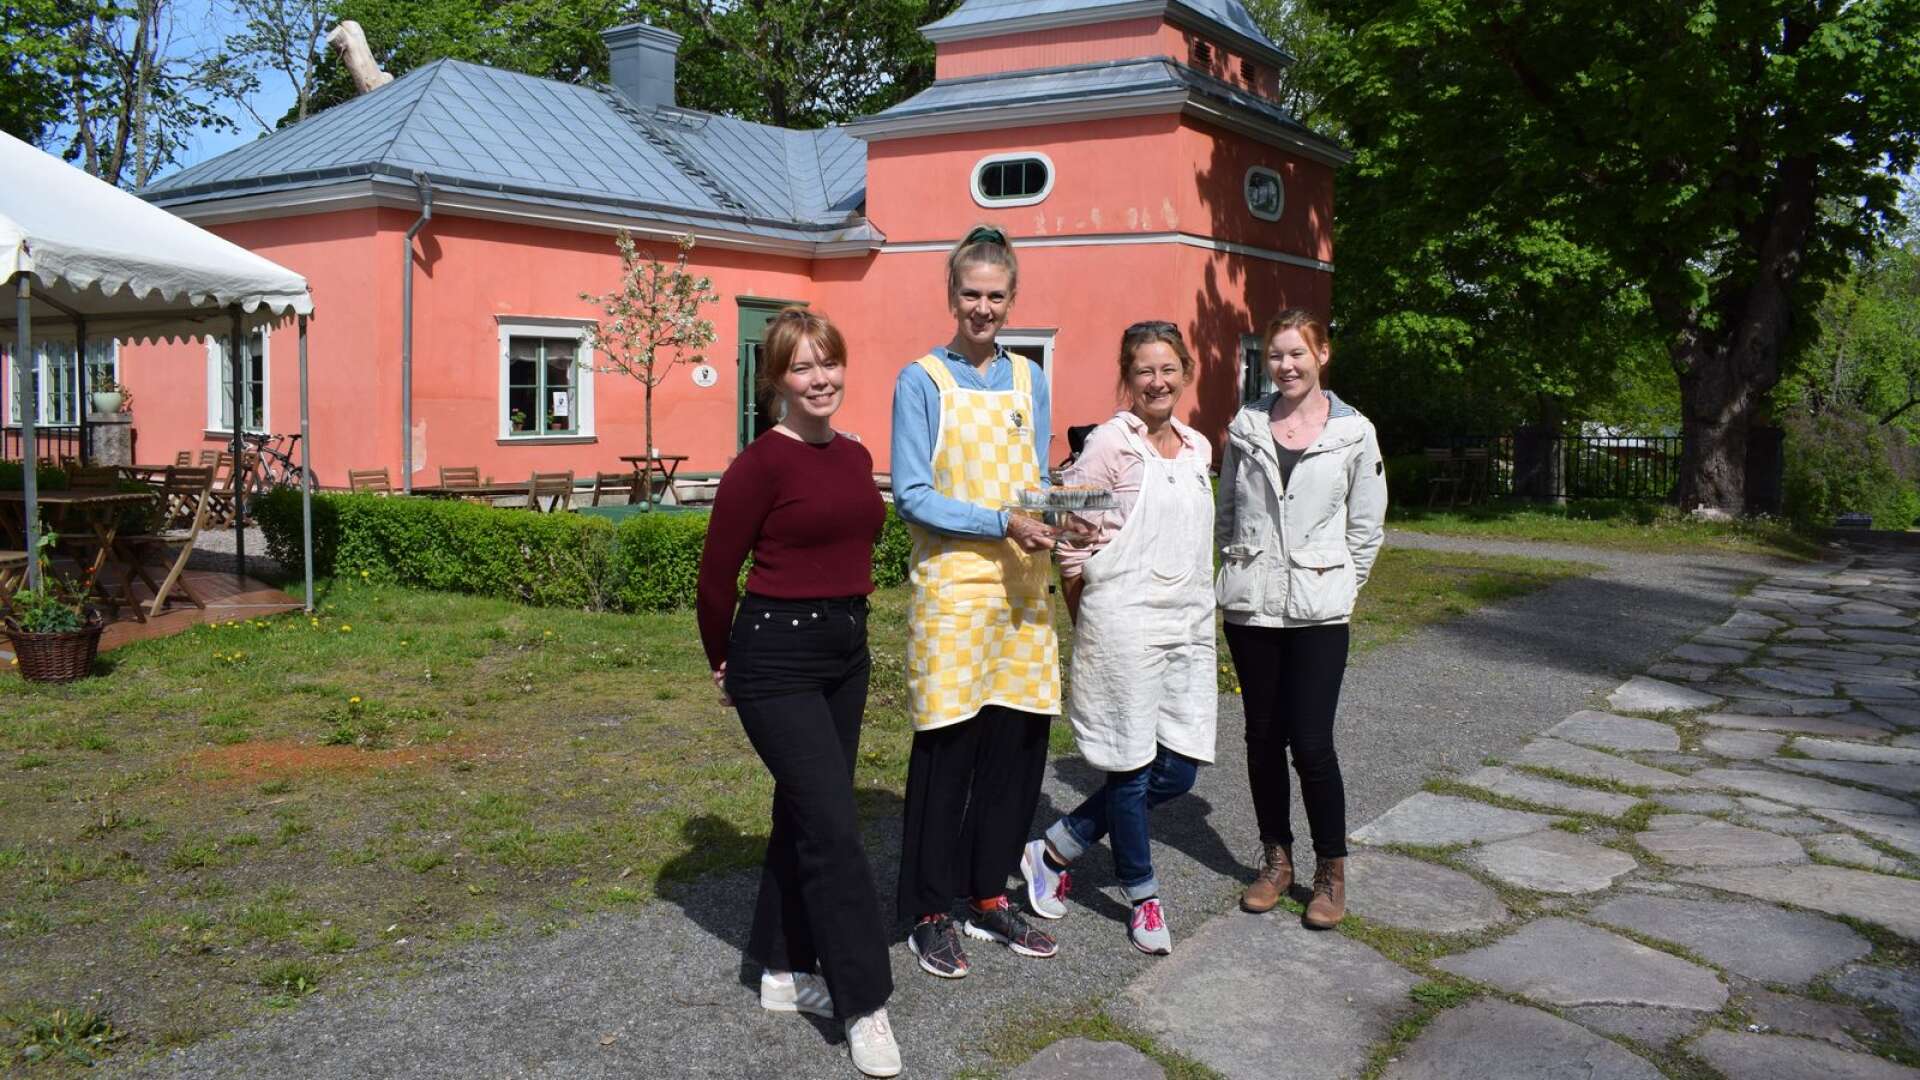 Frida Persson från turismenheten, Tabita Nilsson och Åsa Gillgren från Gustafsviks trädgårdscafé och Annalena Åkerstedt, som driver butik i den östra flygeln i sommar, öppnar dörrarna till årets turistsäsong vid herrgårdsområdet Gustafsvik.